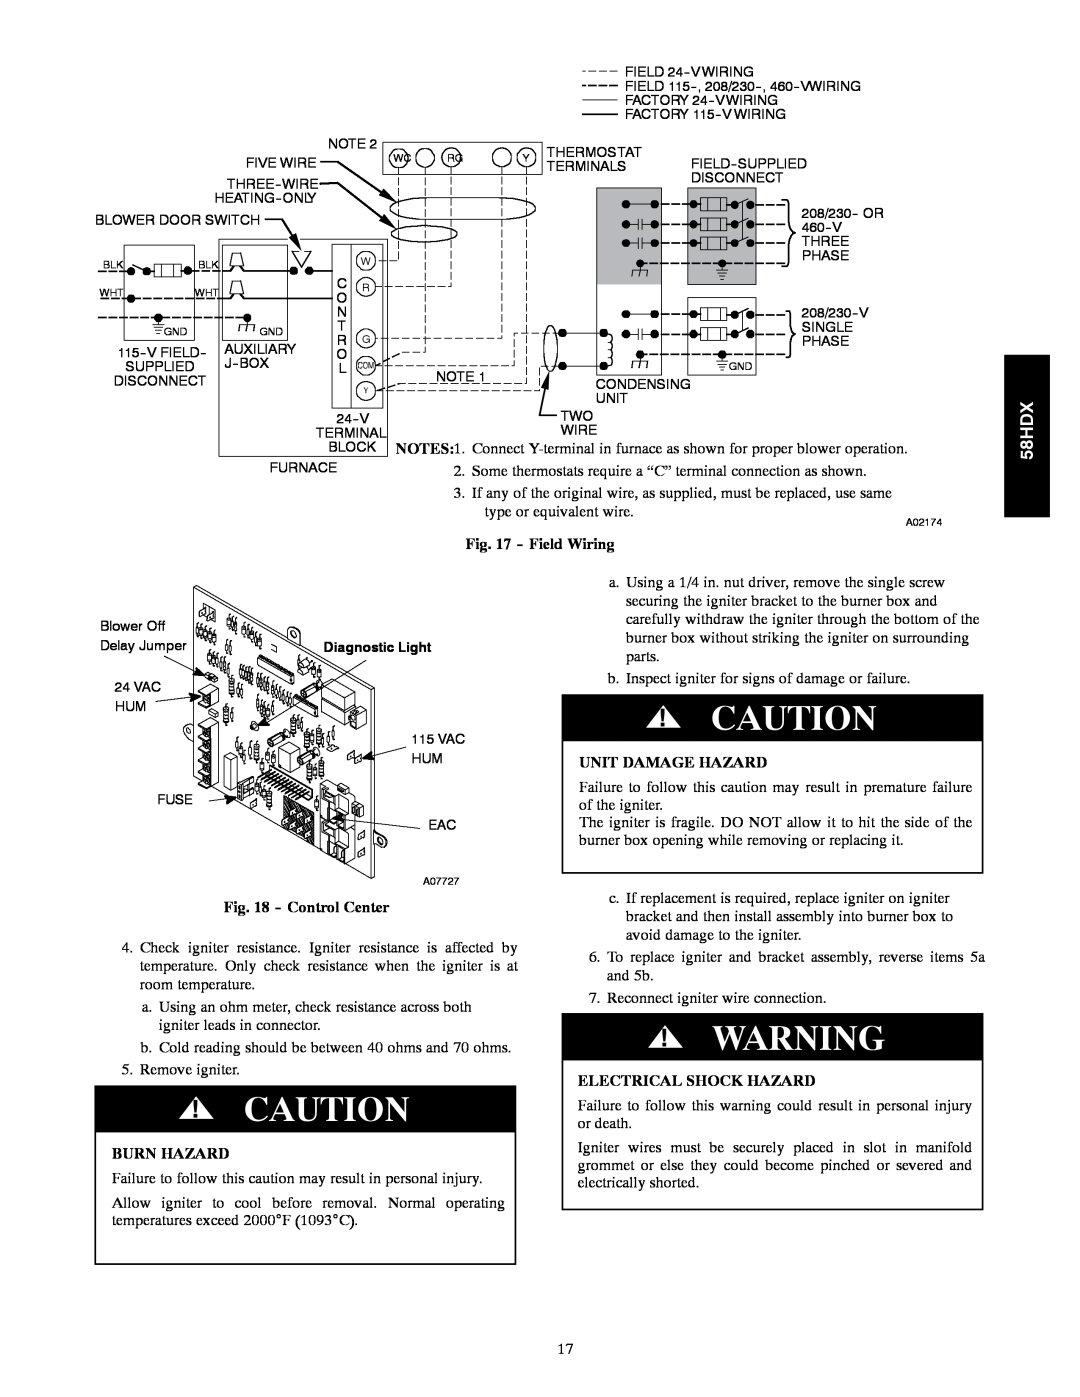 Carrier 58HDX instruction manual Field Wiring, Control Center, Burn Hazard, Unit Damage Hazard, Electrical Shock Hazard 